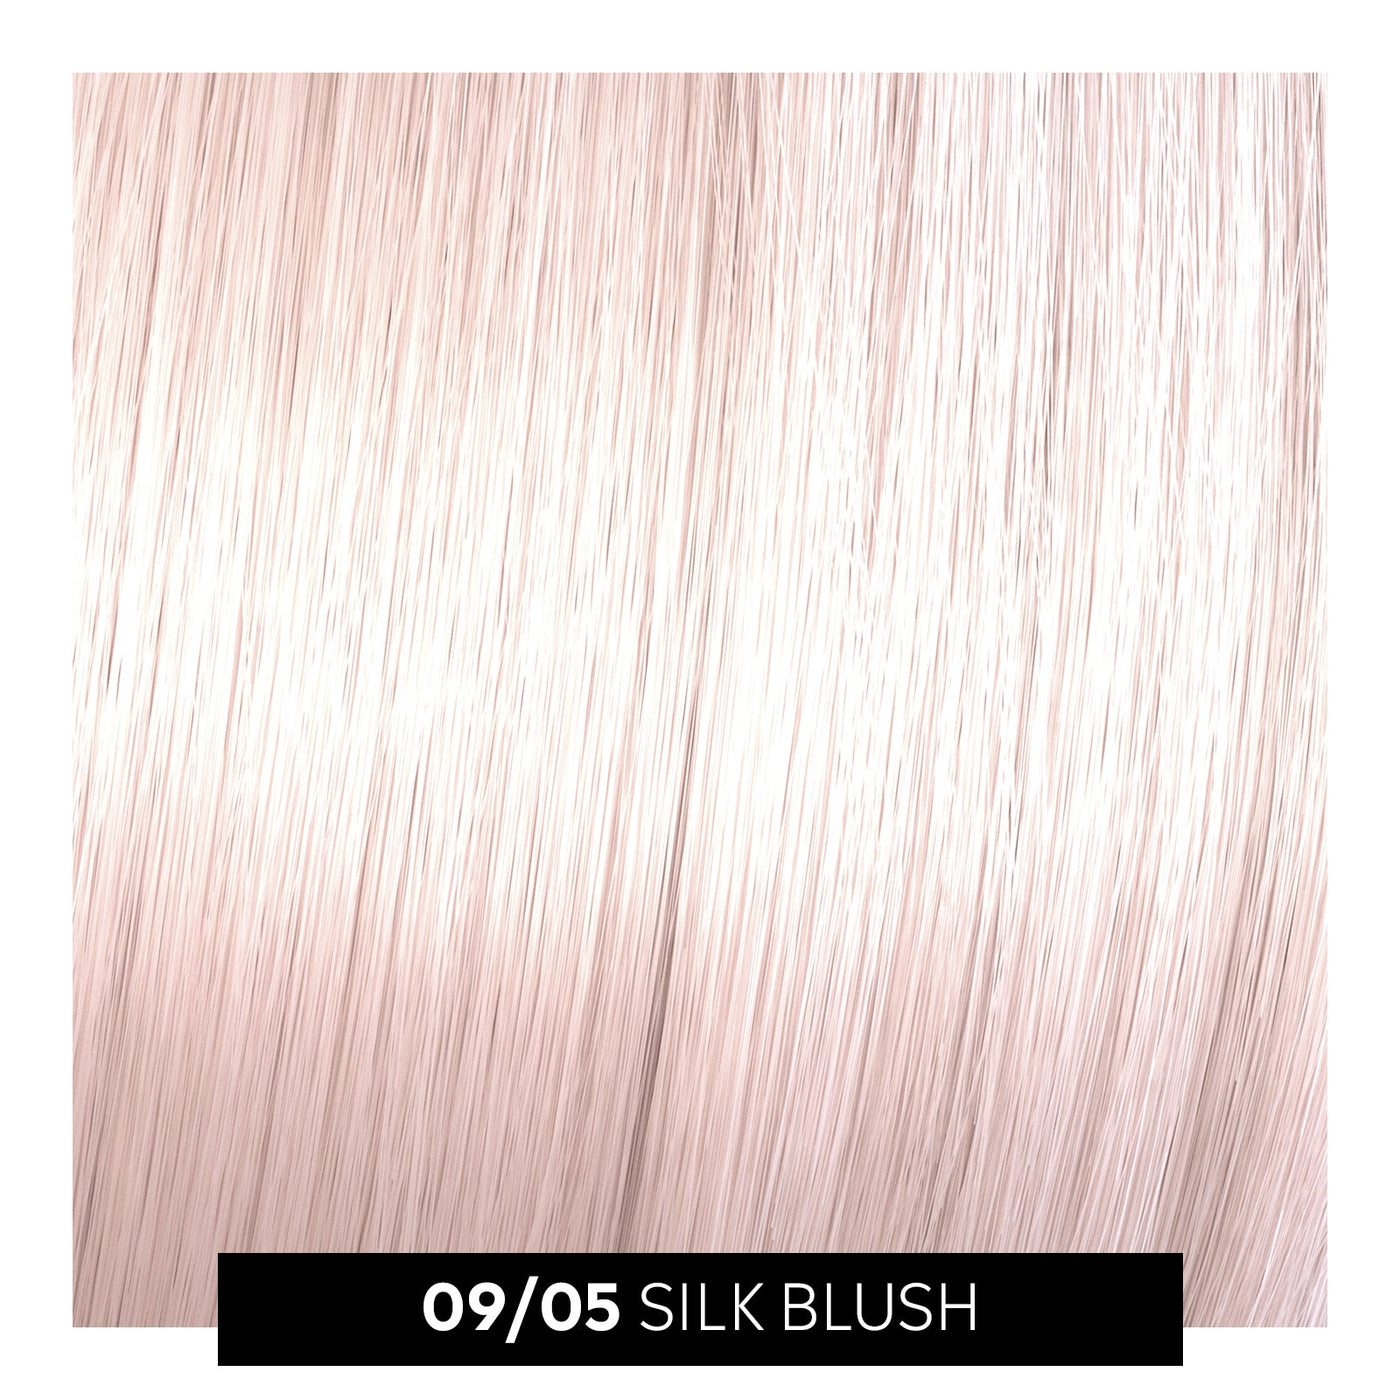 09/05 silk blush